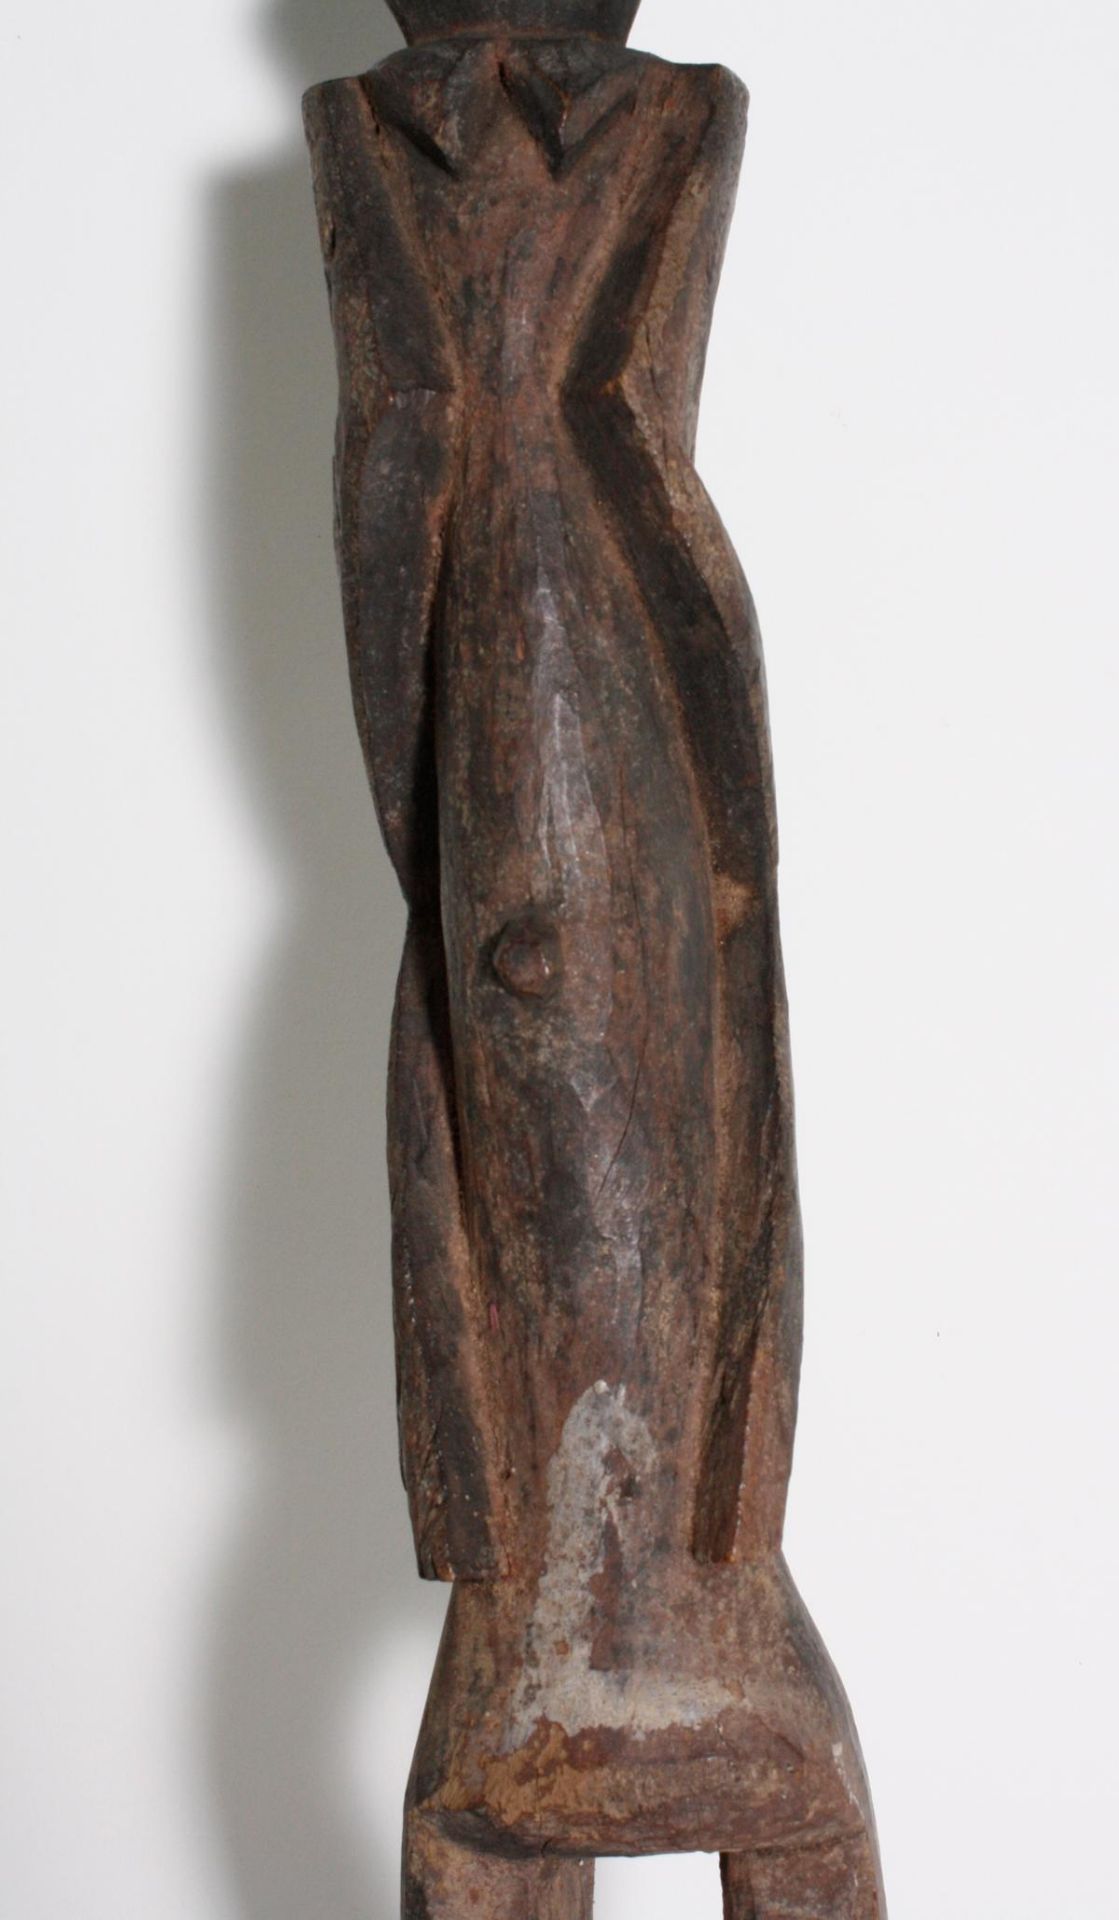 Pfahlfigur "Tauwa", Chamba, Nigeria, Kamerum, 1. Hälfte 20. Jh.Holz geschnitzt, dunkler Patina, - Bild 3 aus 6